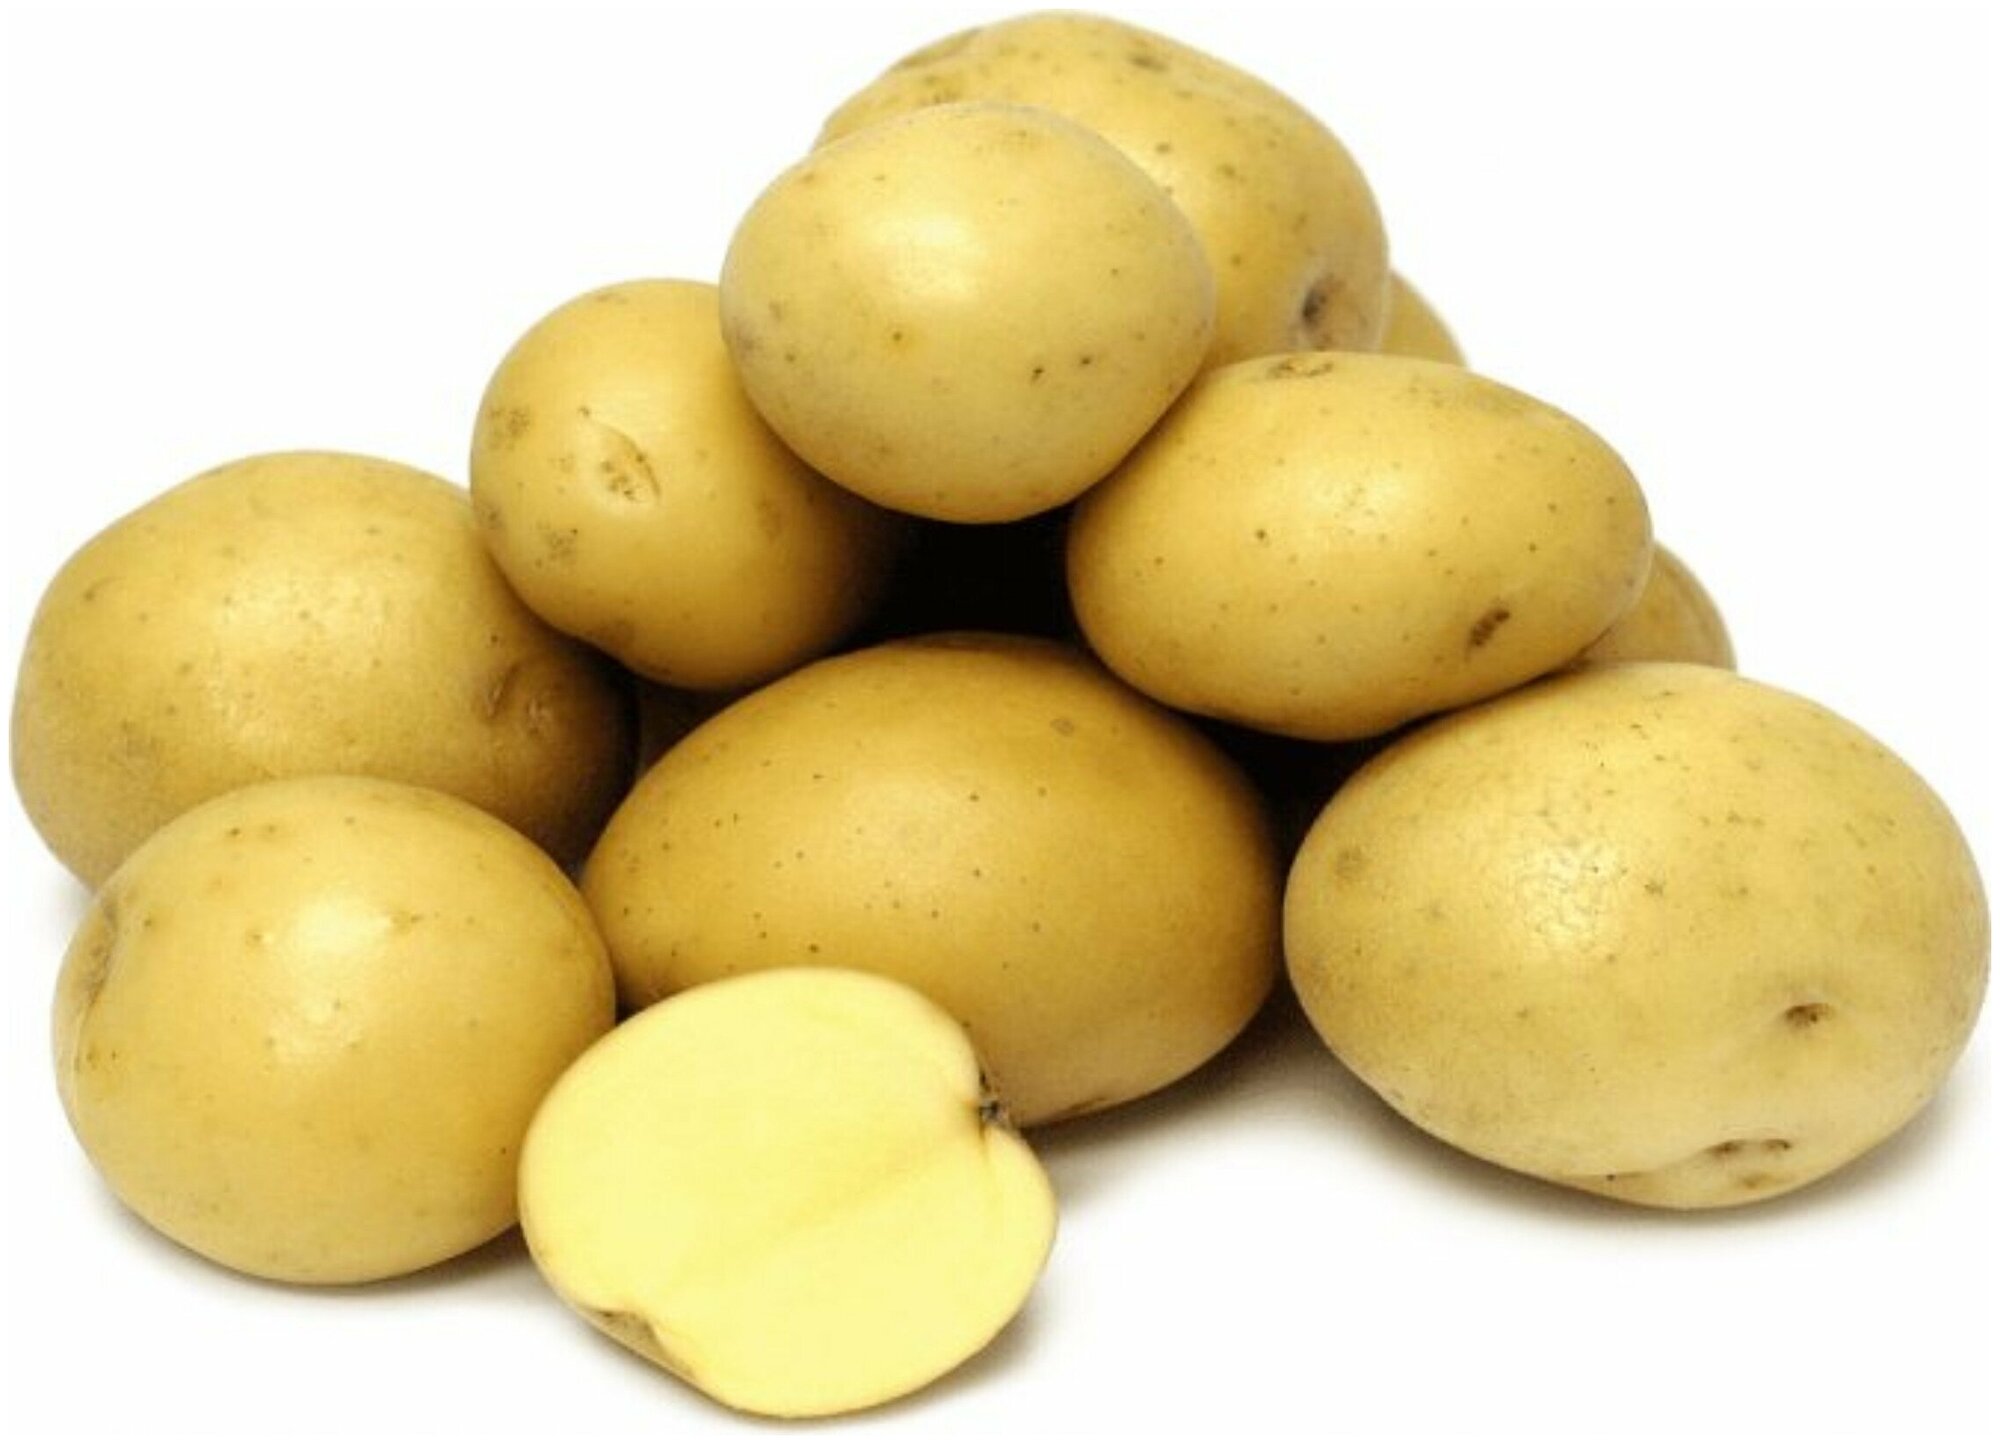 Картофель "Джувел" в сетке 2 кг, защищенный от вирусов, с отличным картофельным ароматом и содержанием крахмала 13%. Высокая устойчивость к болезням